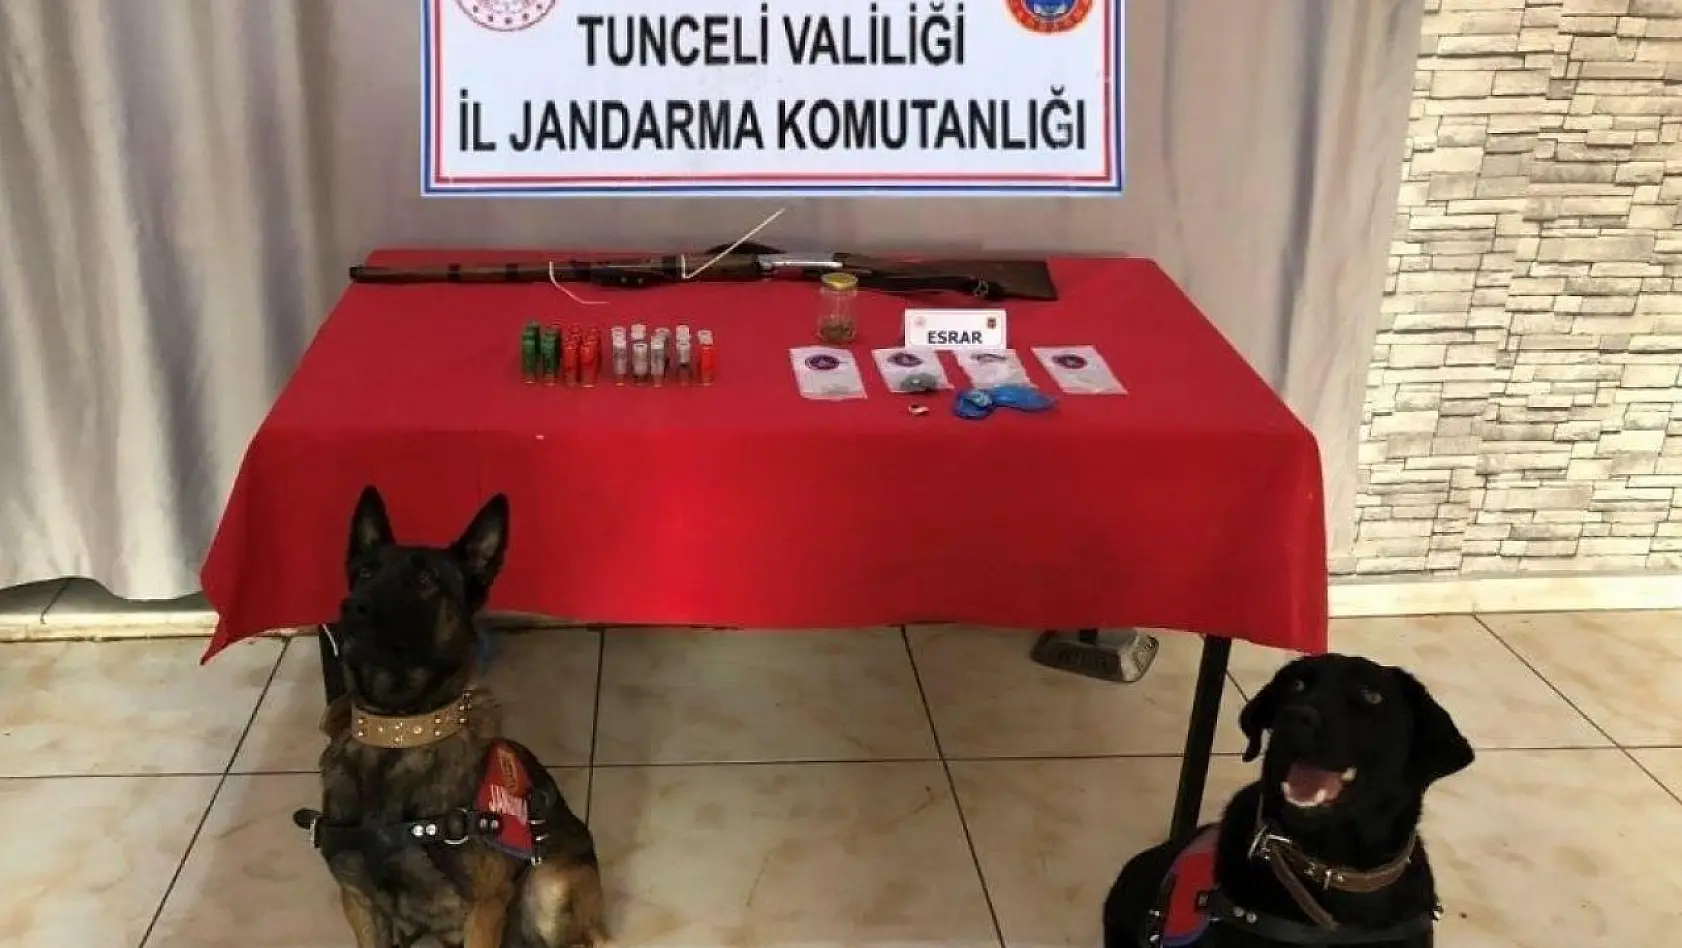 Tunceli'de uyuşturucu ve av tüfeği ele geçirildi: 2 gözaltı